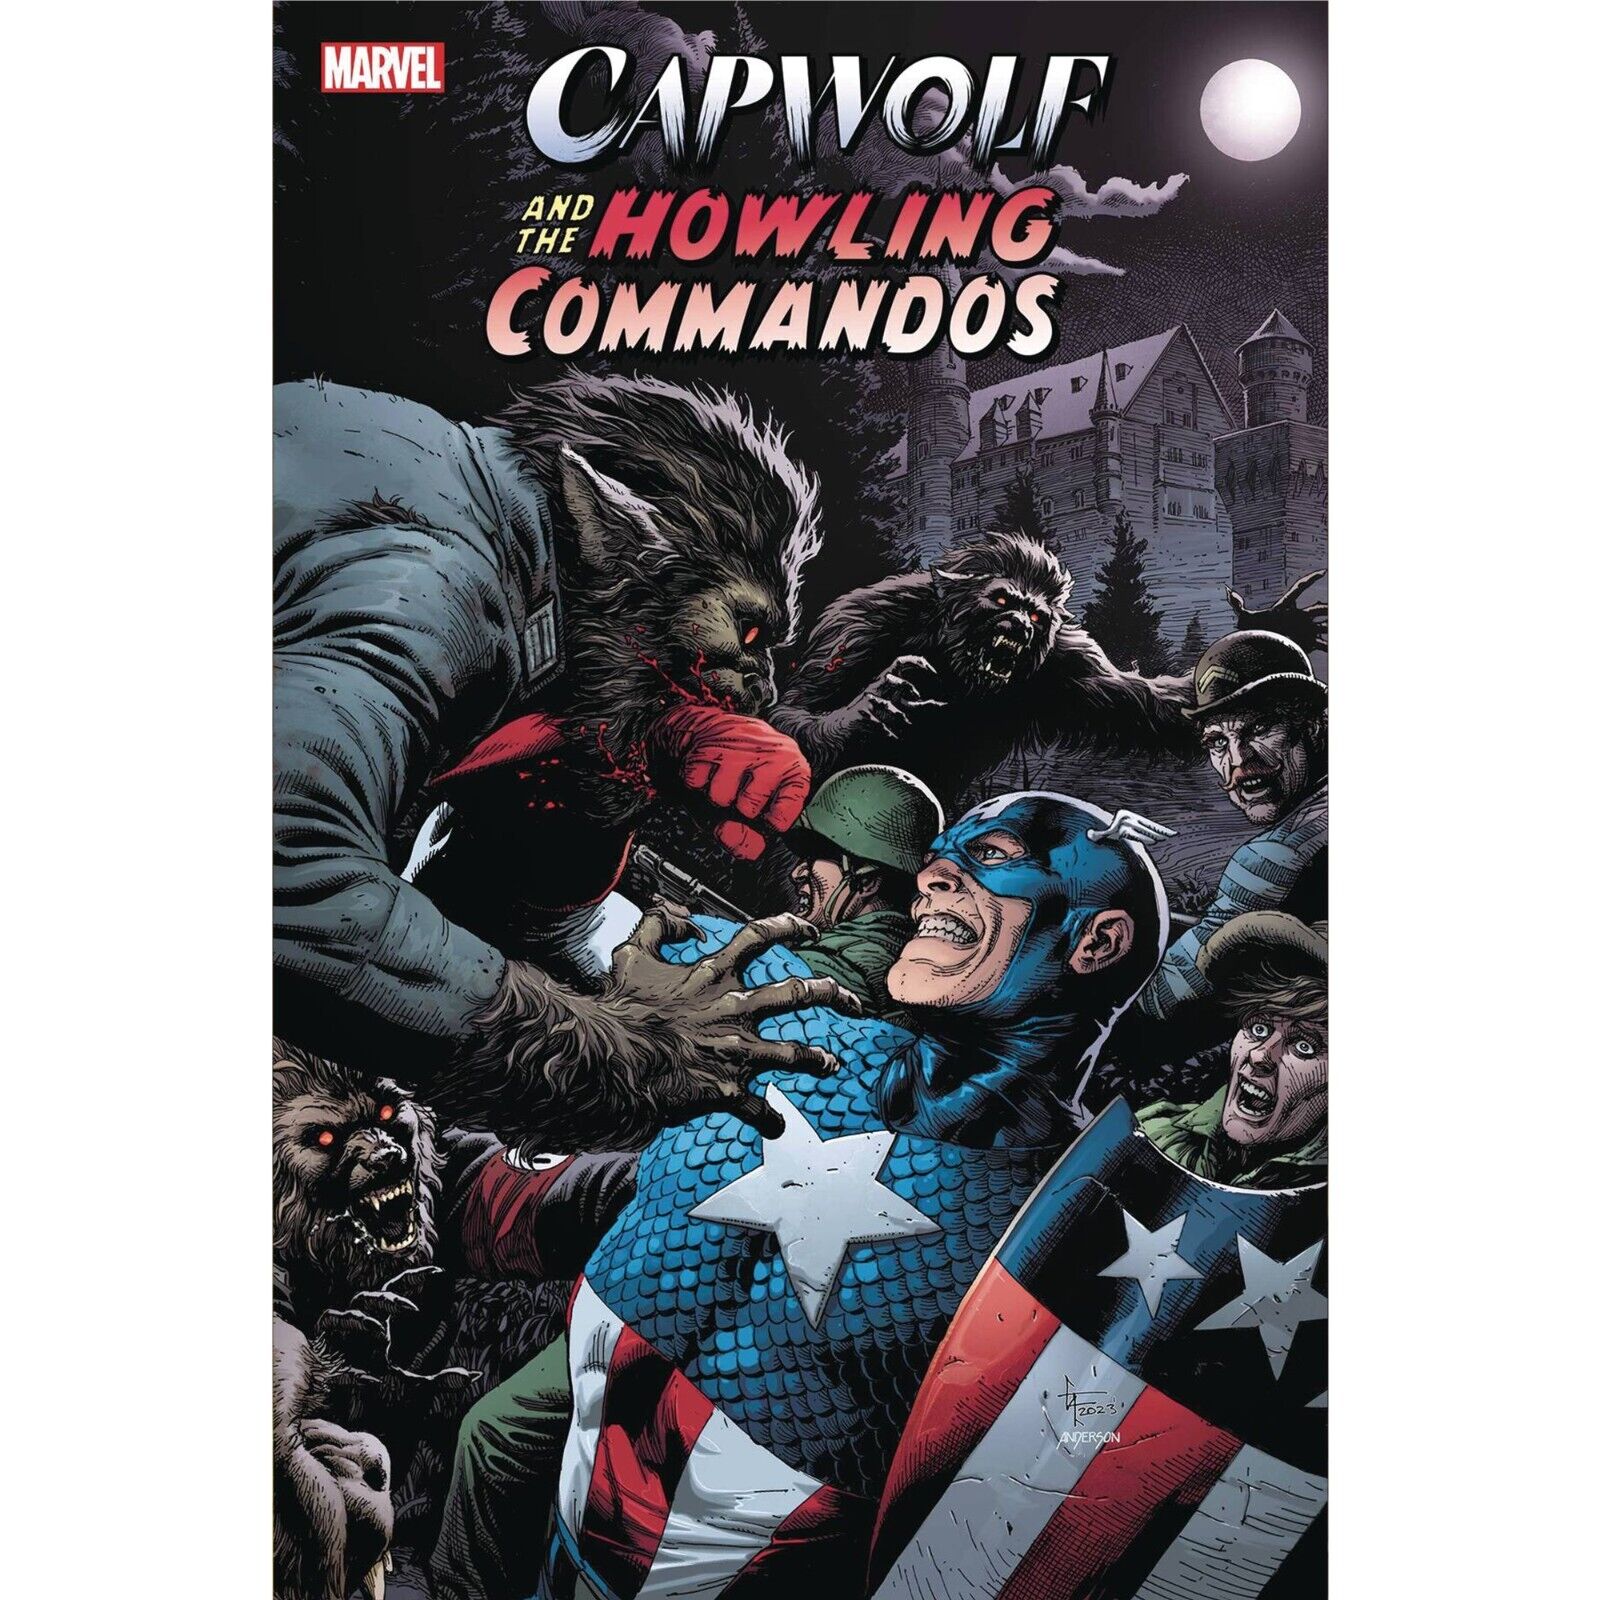 Capwolf & Howling Commandos (2023) 1 2 3 4 | Marvel |FULL RUN / COVER SELECT